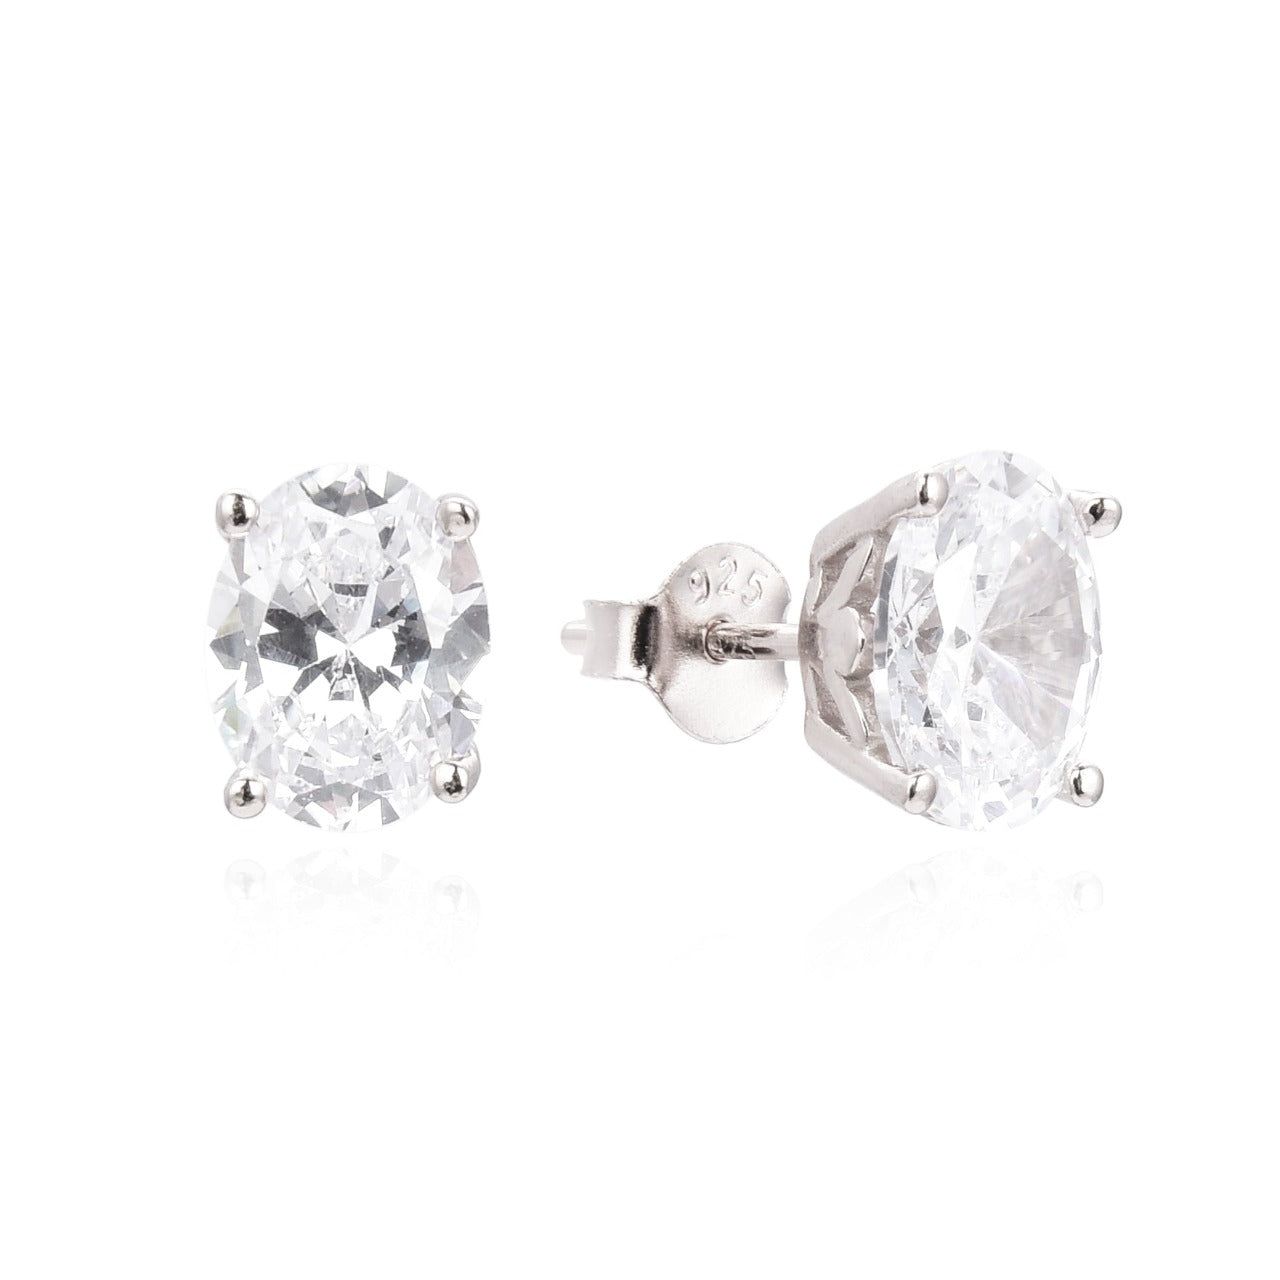 Kilkenny Silver Silver Oval Stud Earrings  Sterling silver oval shaped stud earrings with cubic zirconia stones.